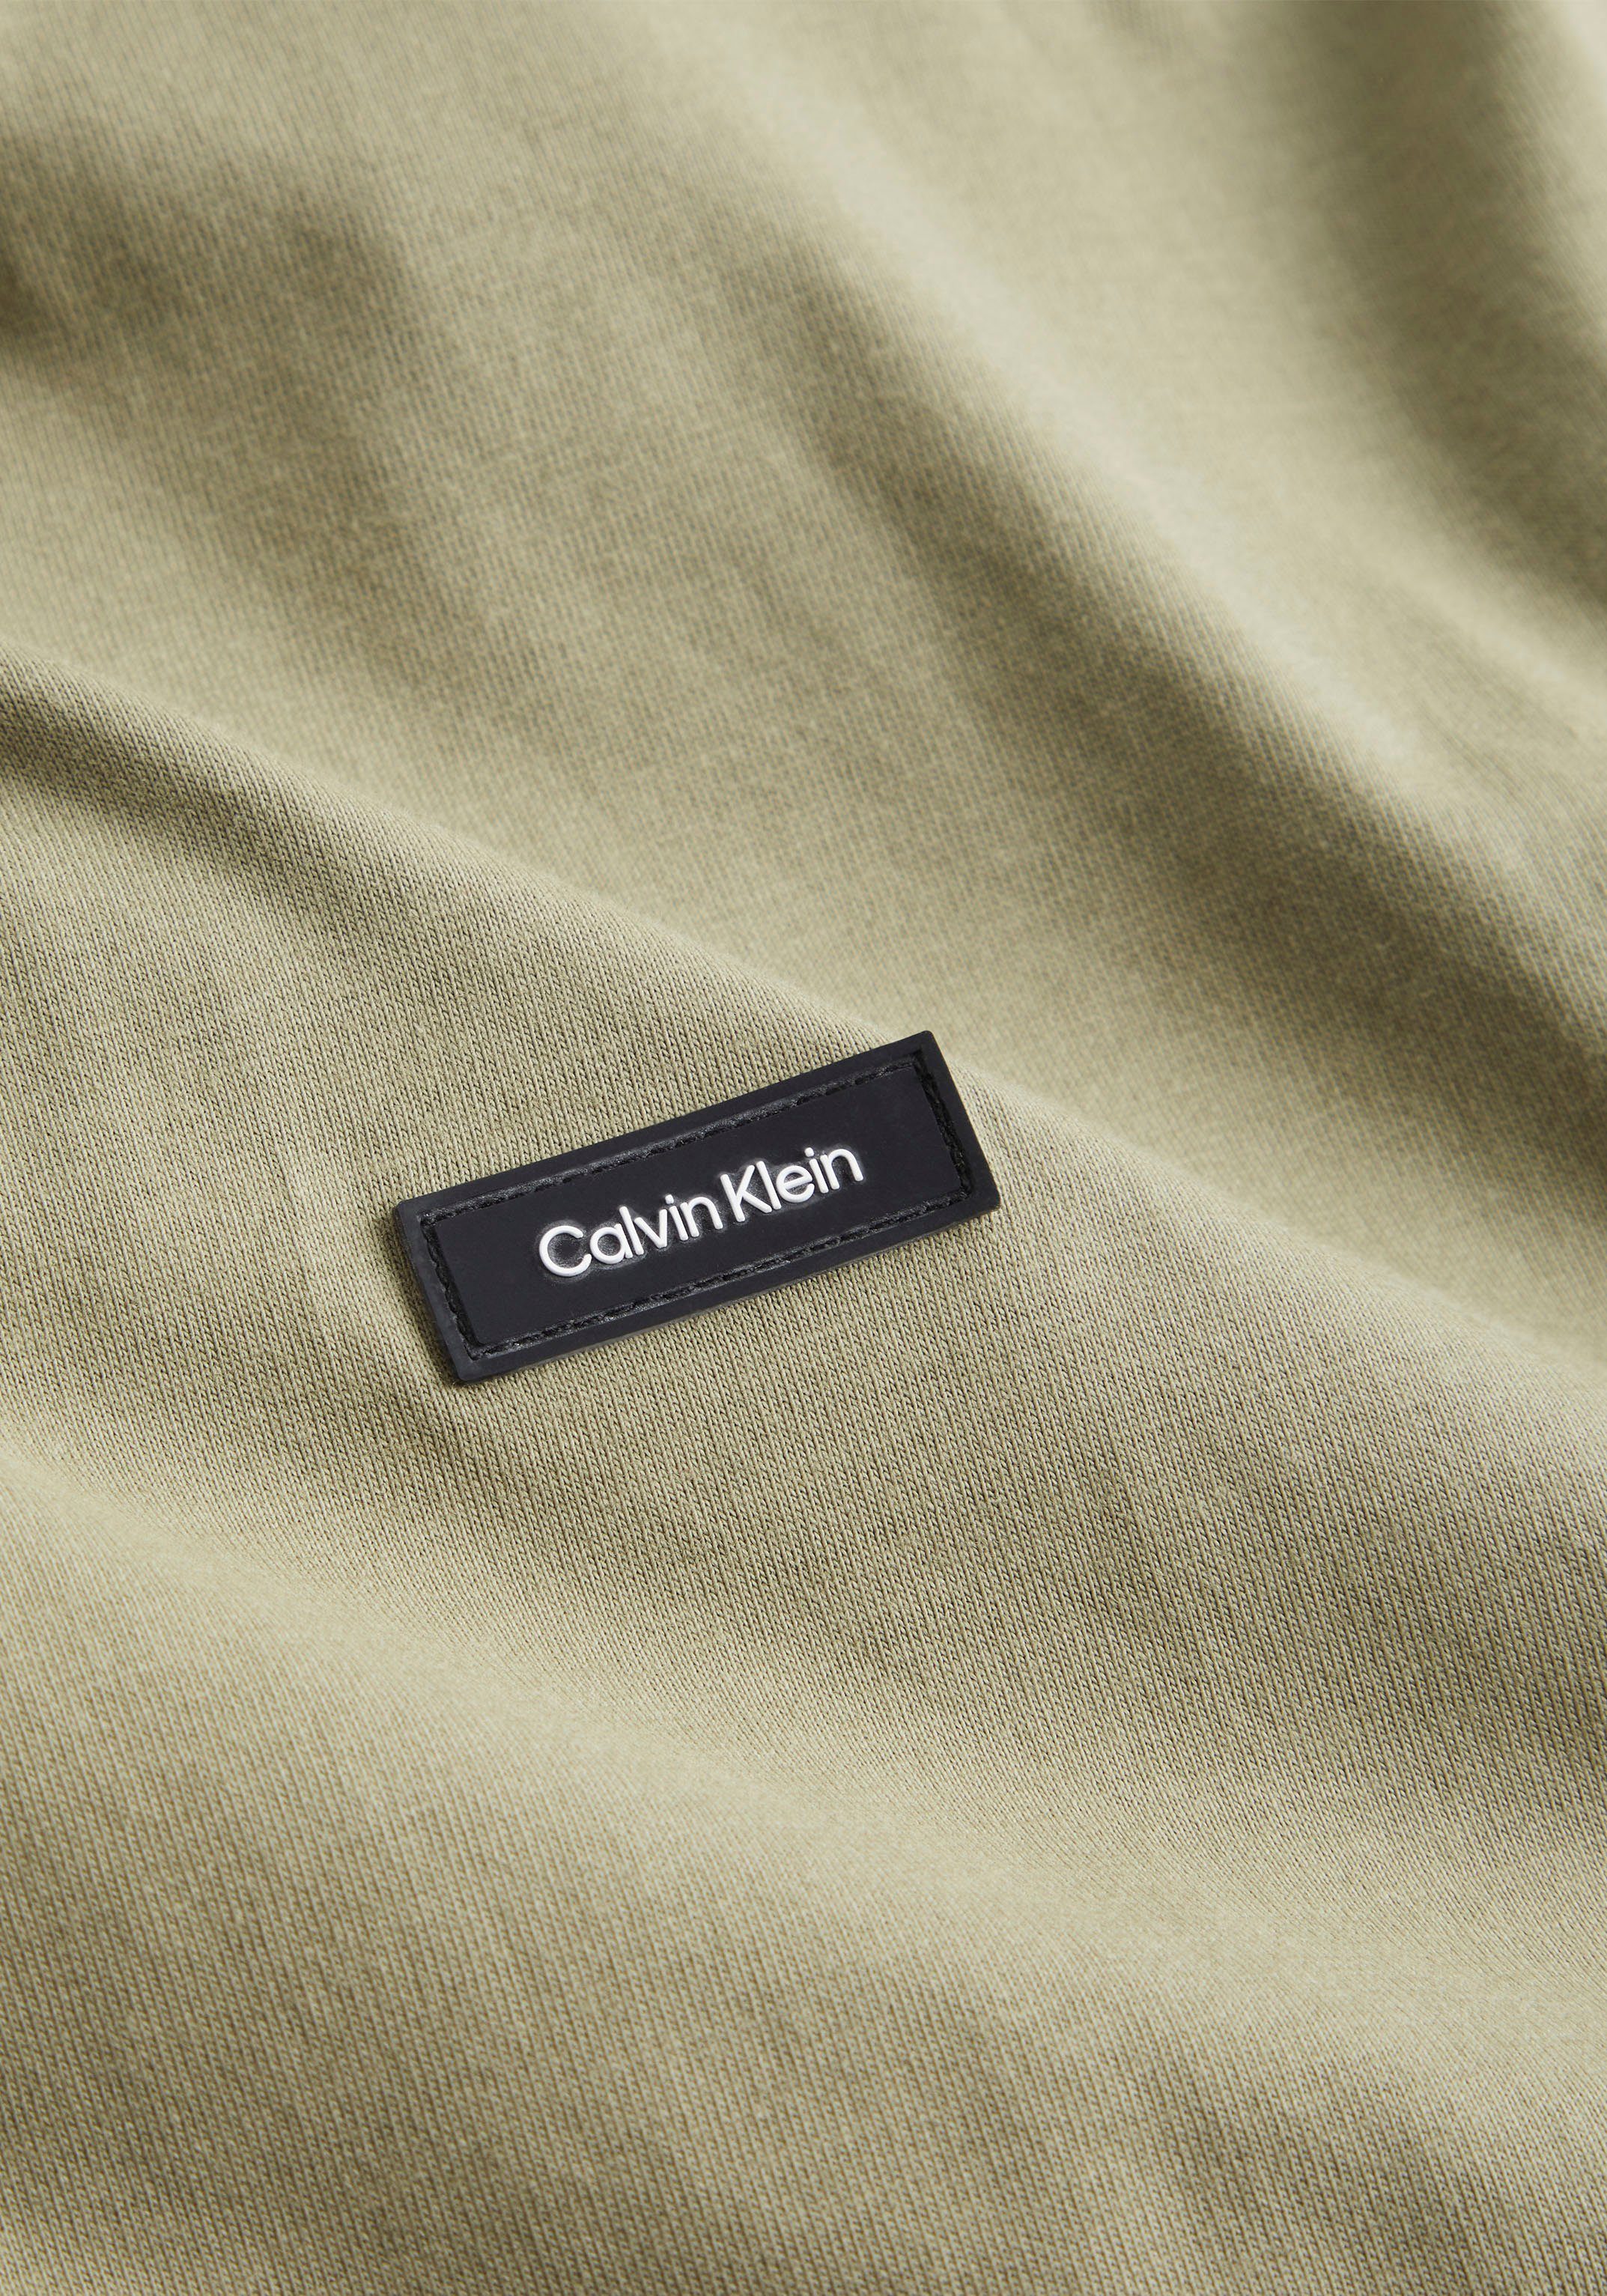 T-SHIRT Klein Klein green Logo COMFORT FIT Brust der Calvin T-Shirt Calvin delta COTTON auf mit